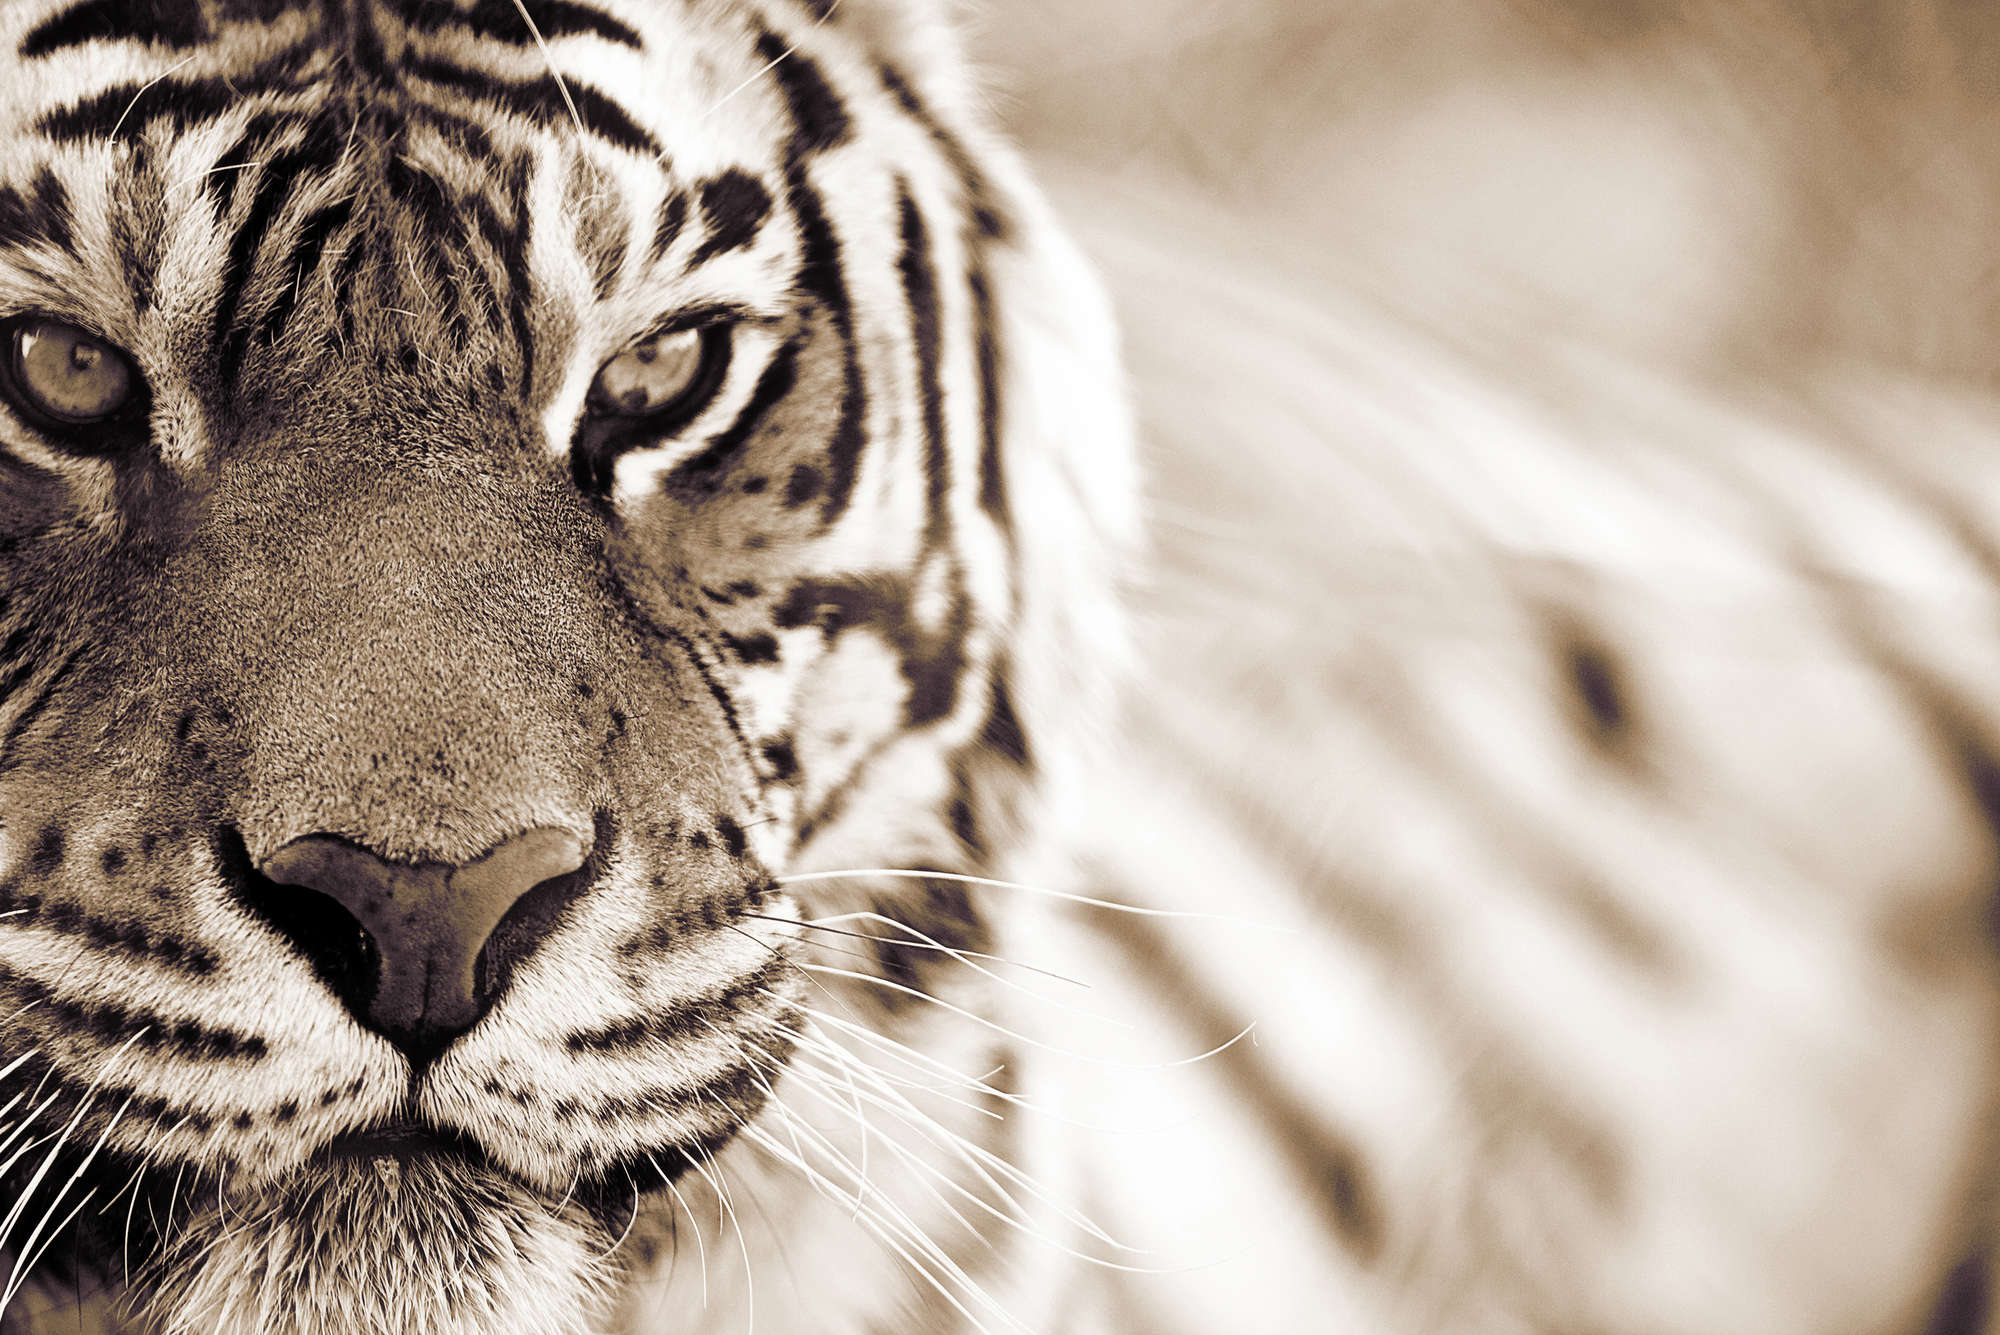             Tier Fototapete Nahaufnahme von Tiger – Strukturiertes Vlies
        